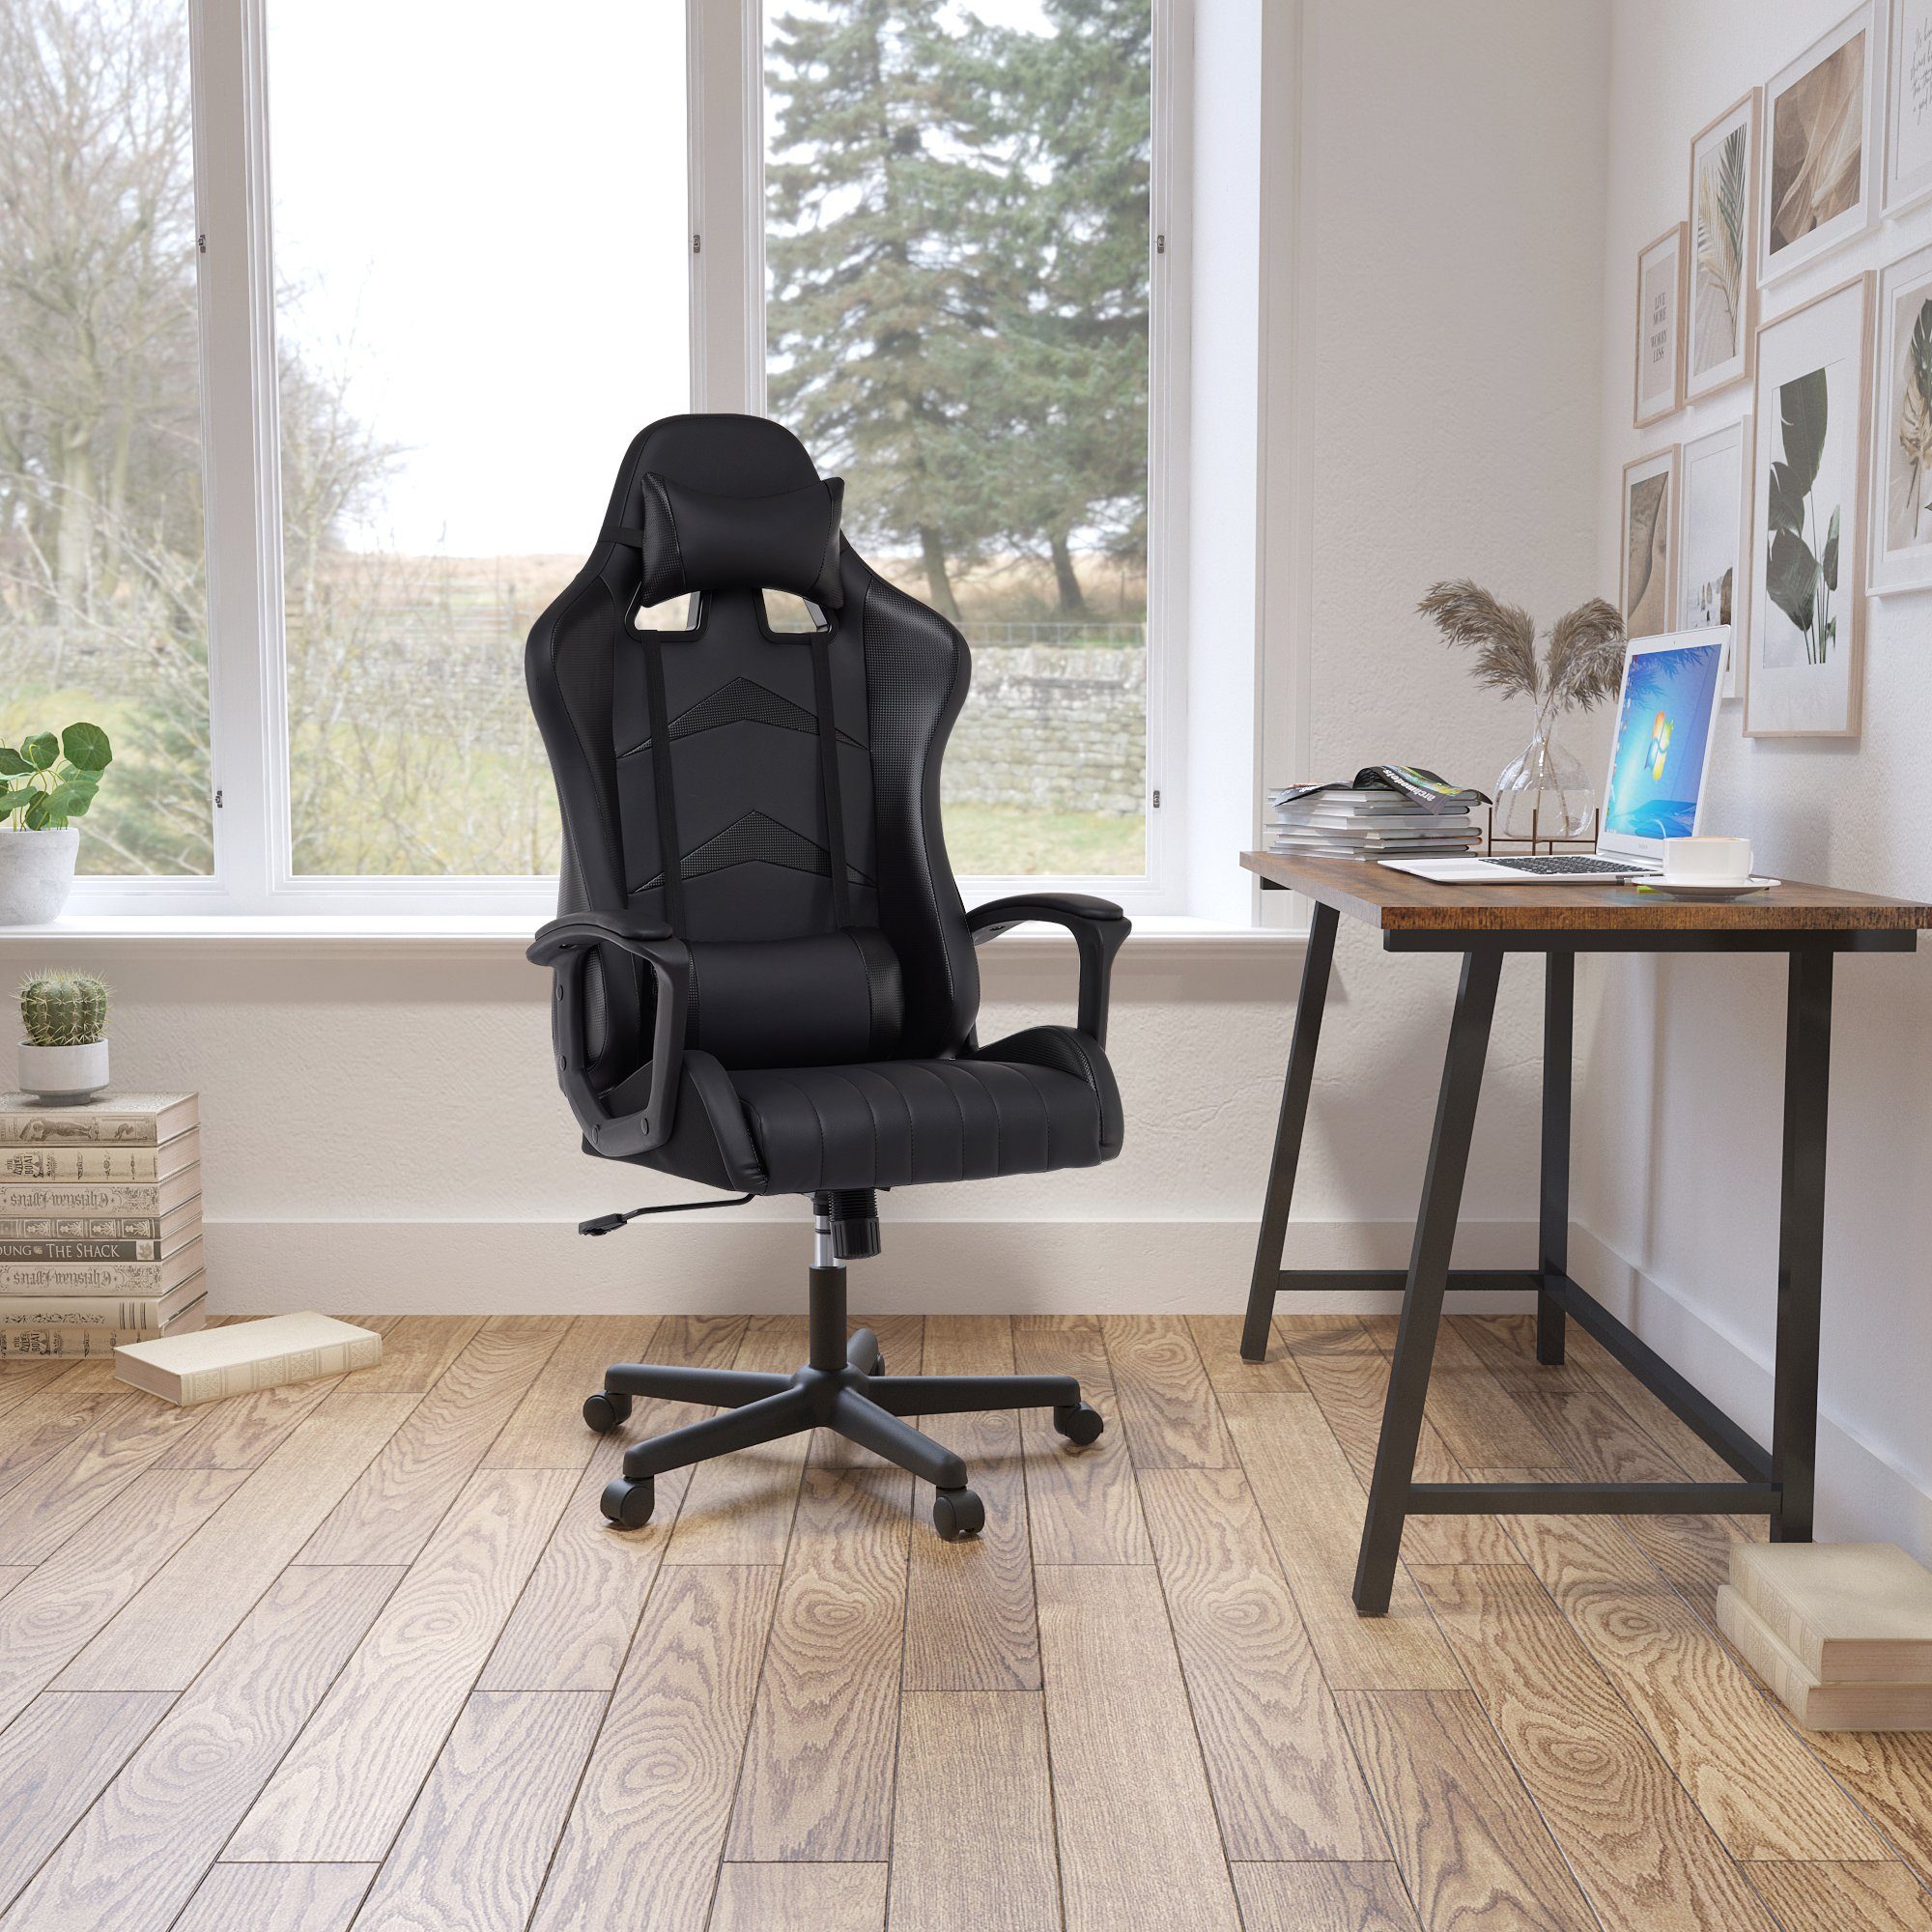 Rückenlehne Verstellbarer hoher mit Gaming-Stuhl Heart schwarz Schreibtischstuhl Ergonomischer Intimate WM